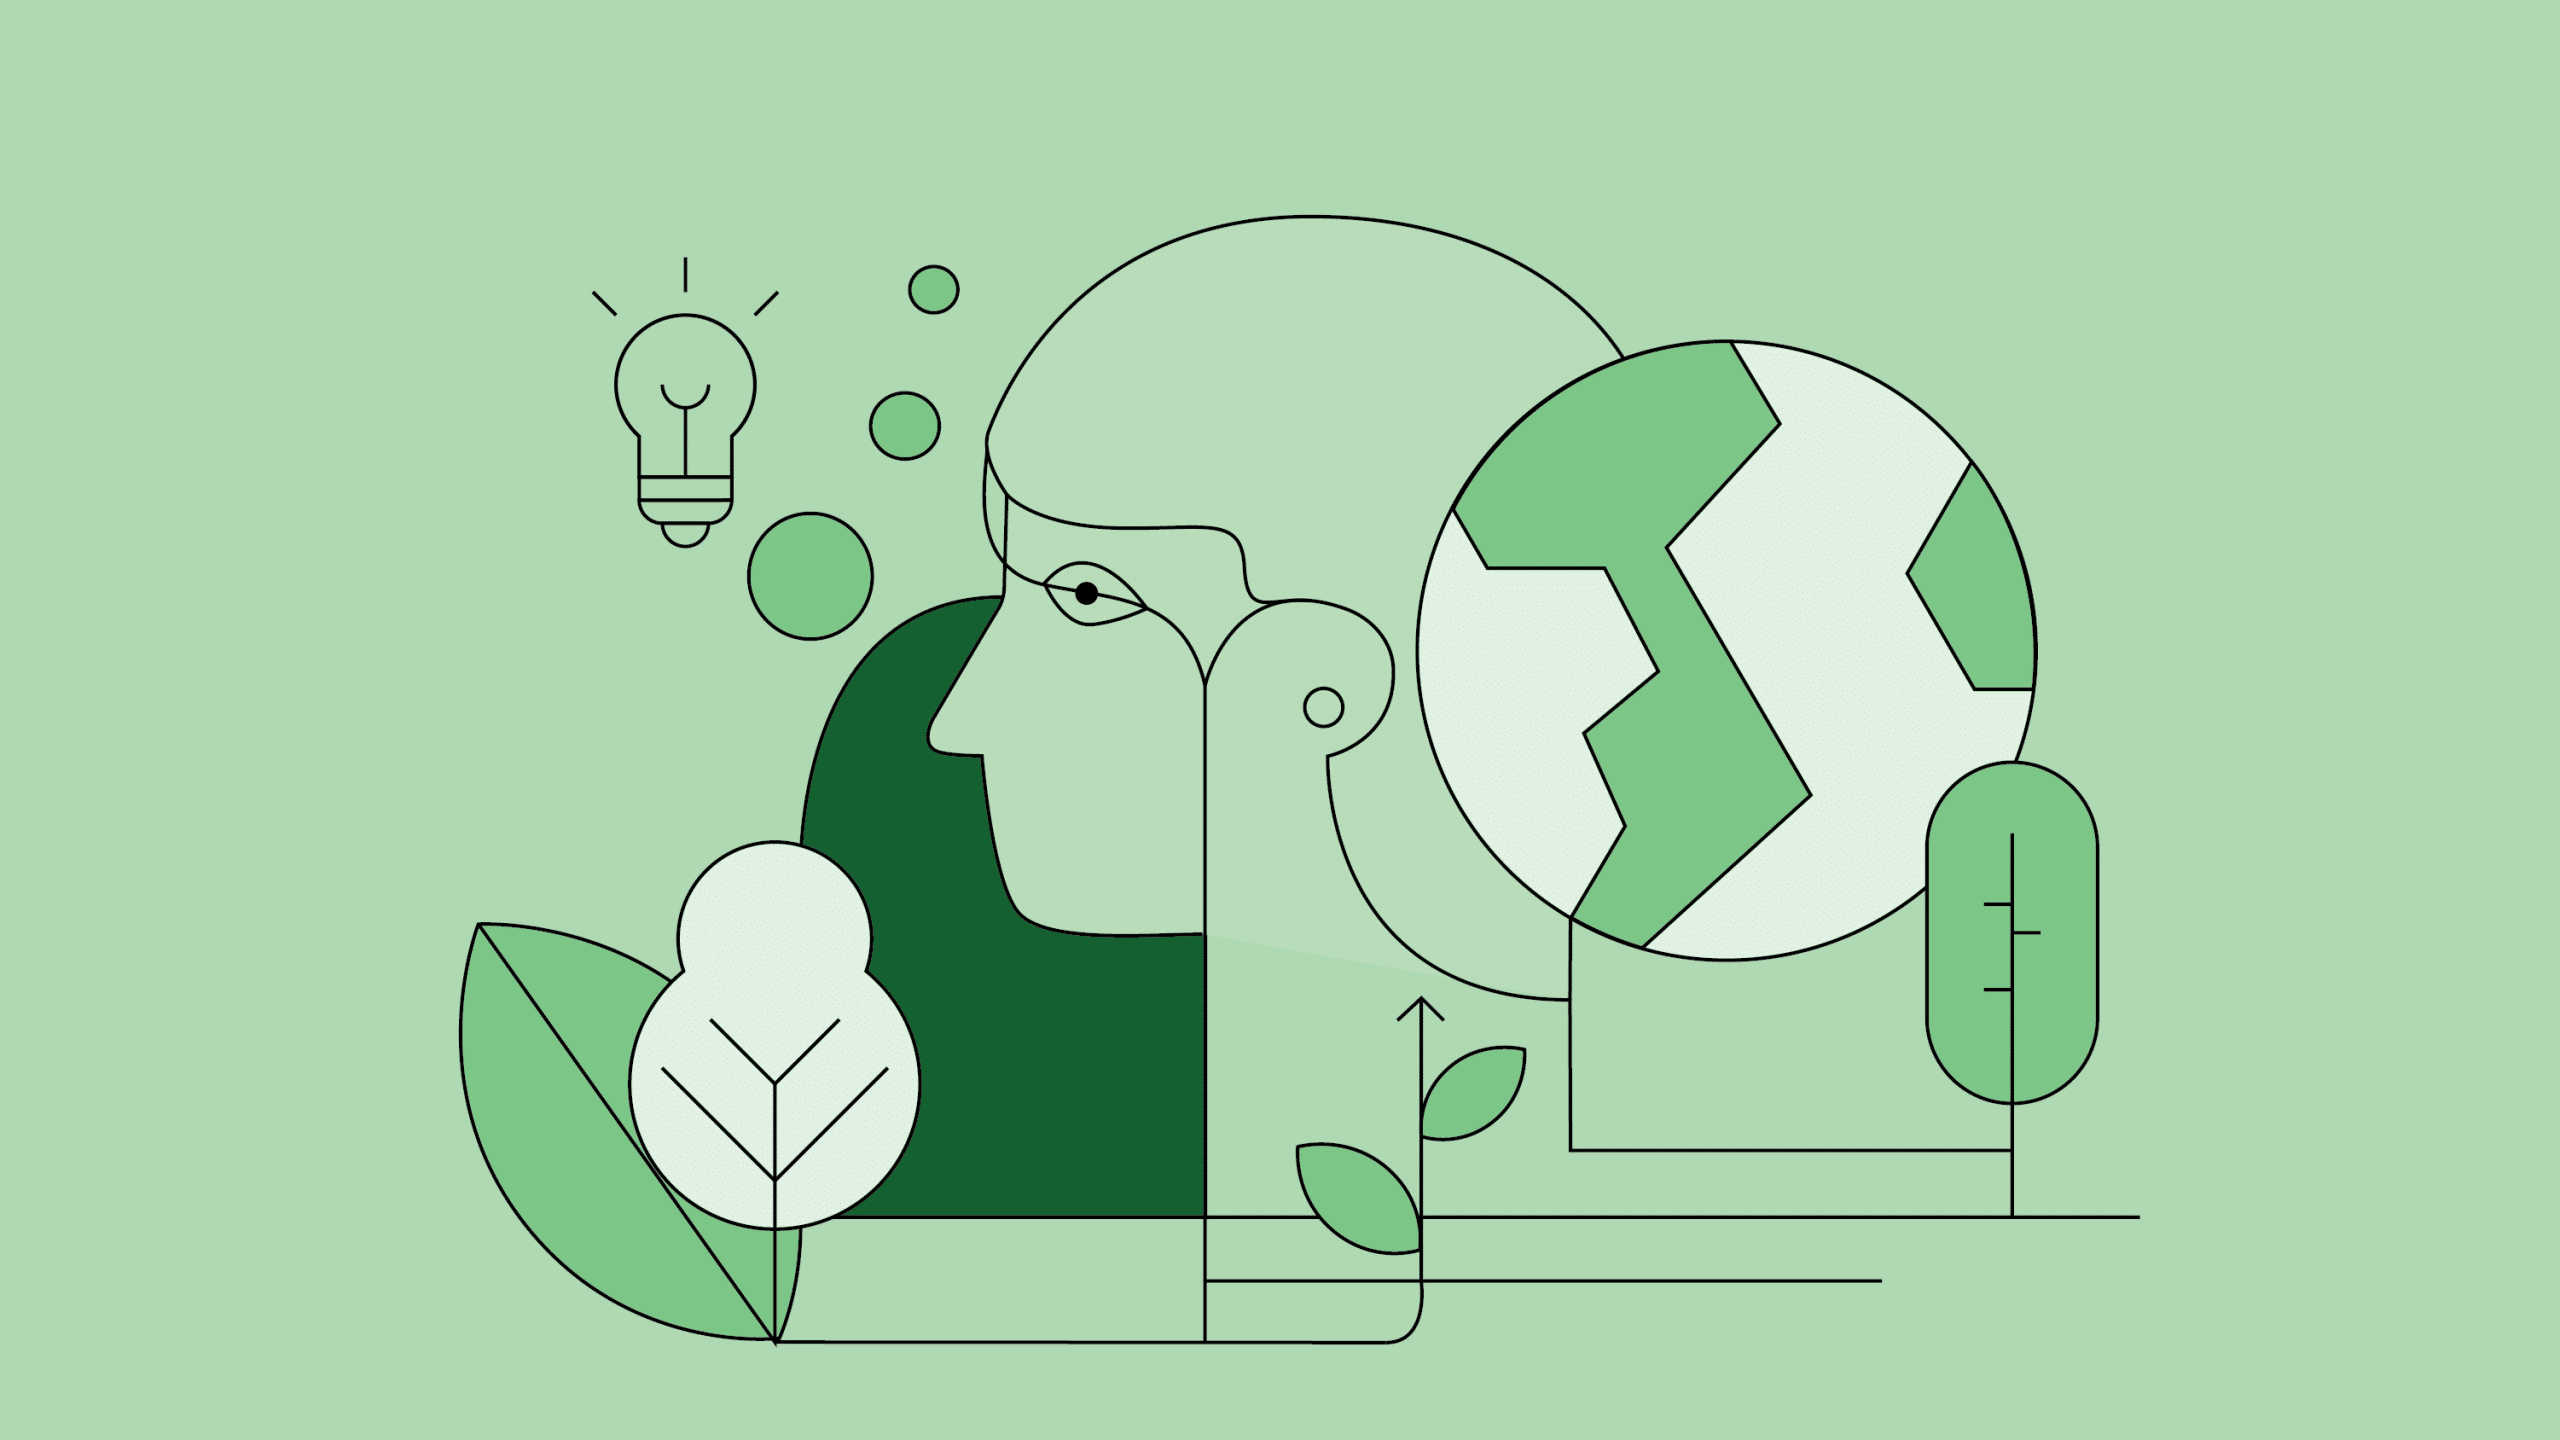 Illustration von einer Glühbirne, Blättern, Weltkugel und Mensch auf grünem Hintergrund